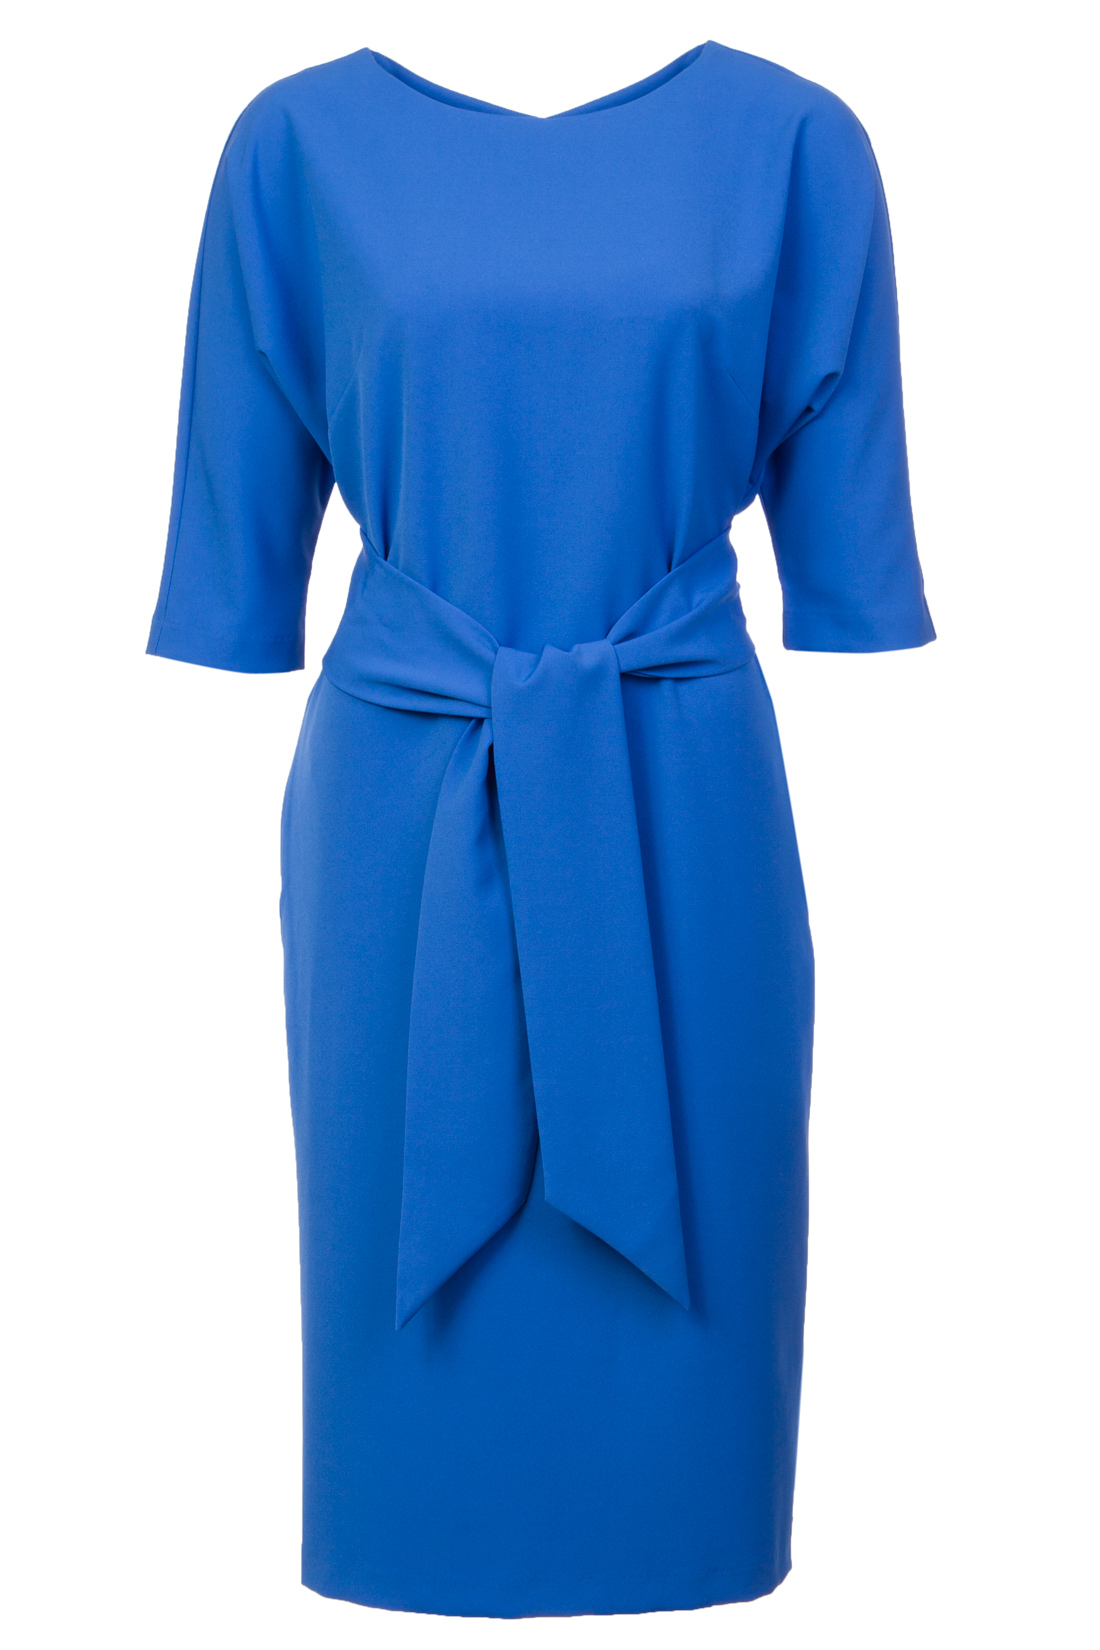 Платье с широким поясом (арт. baon B457024), размер XXL, цвет синий Платье с широким поясом (арт. baon B457024) - фото 4